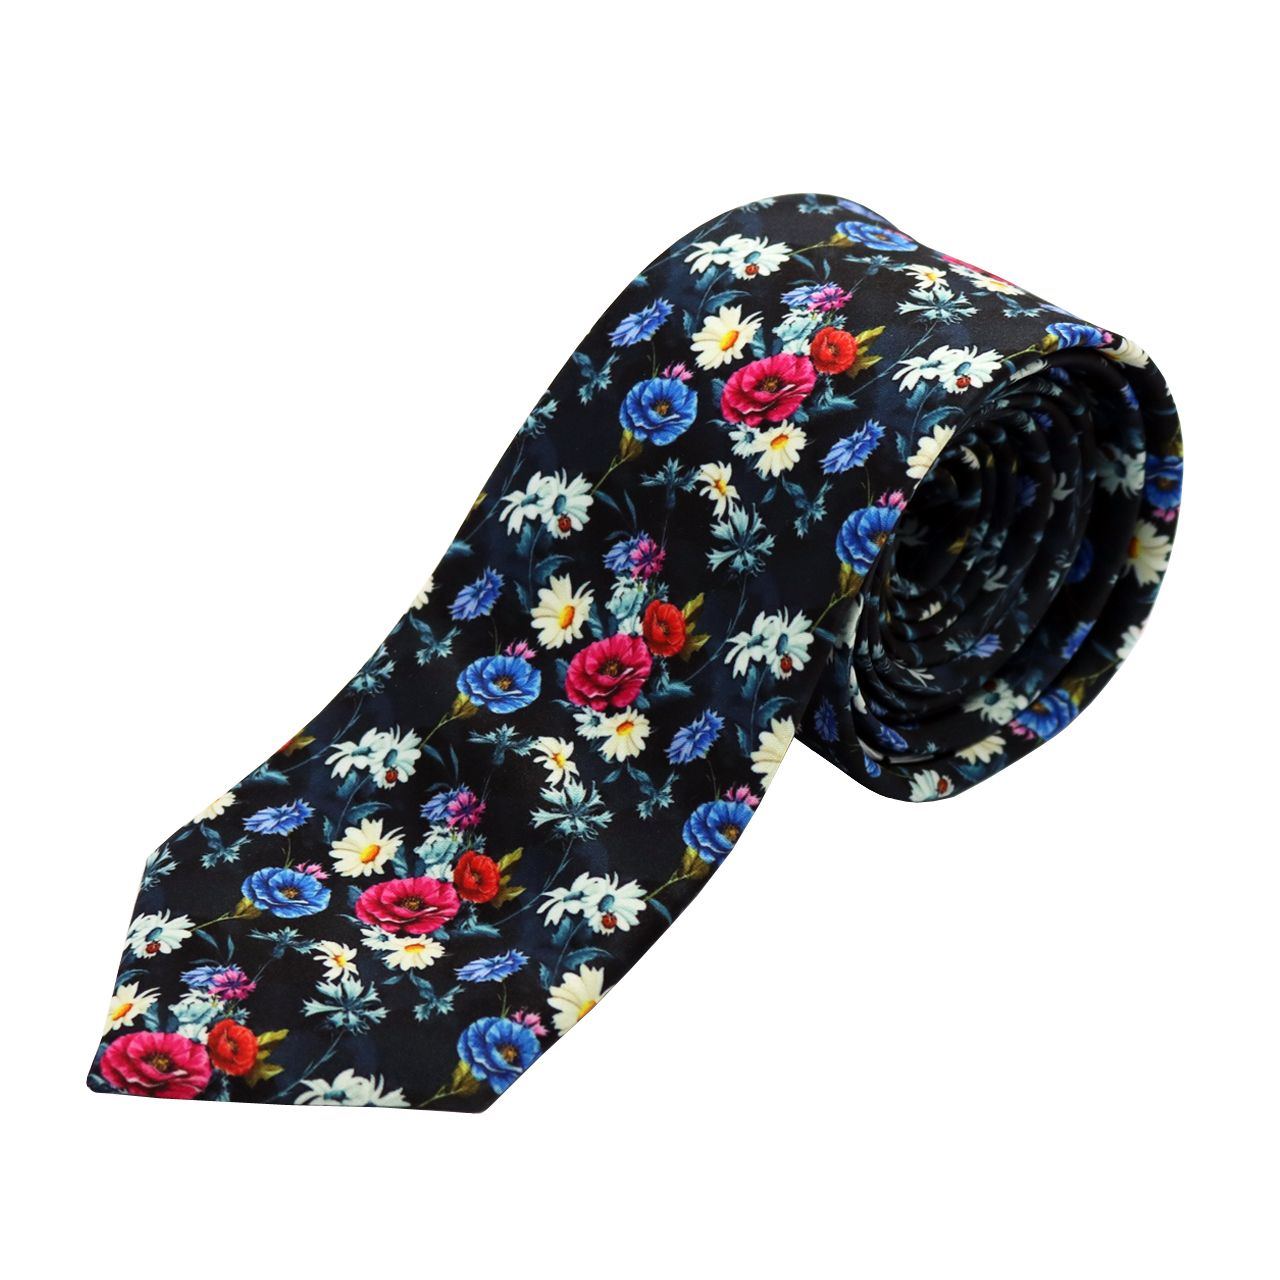 کراوات مردانه طرح گل کد 02 -  - 1